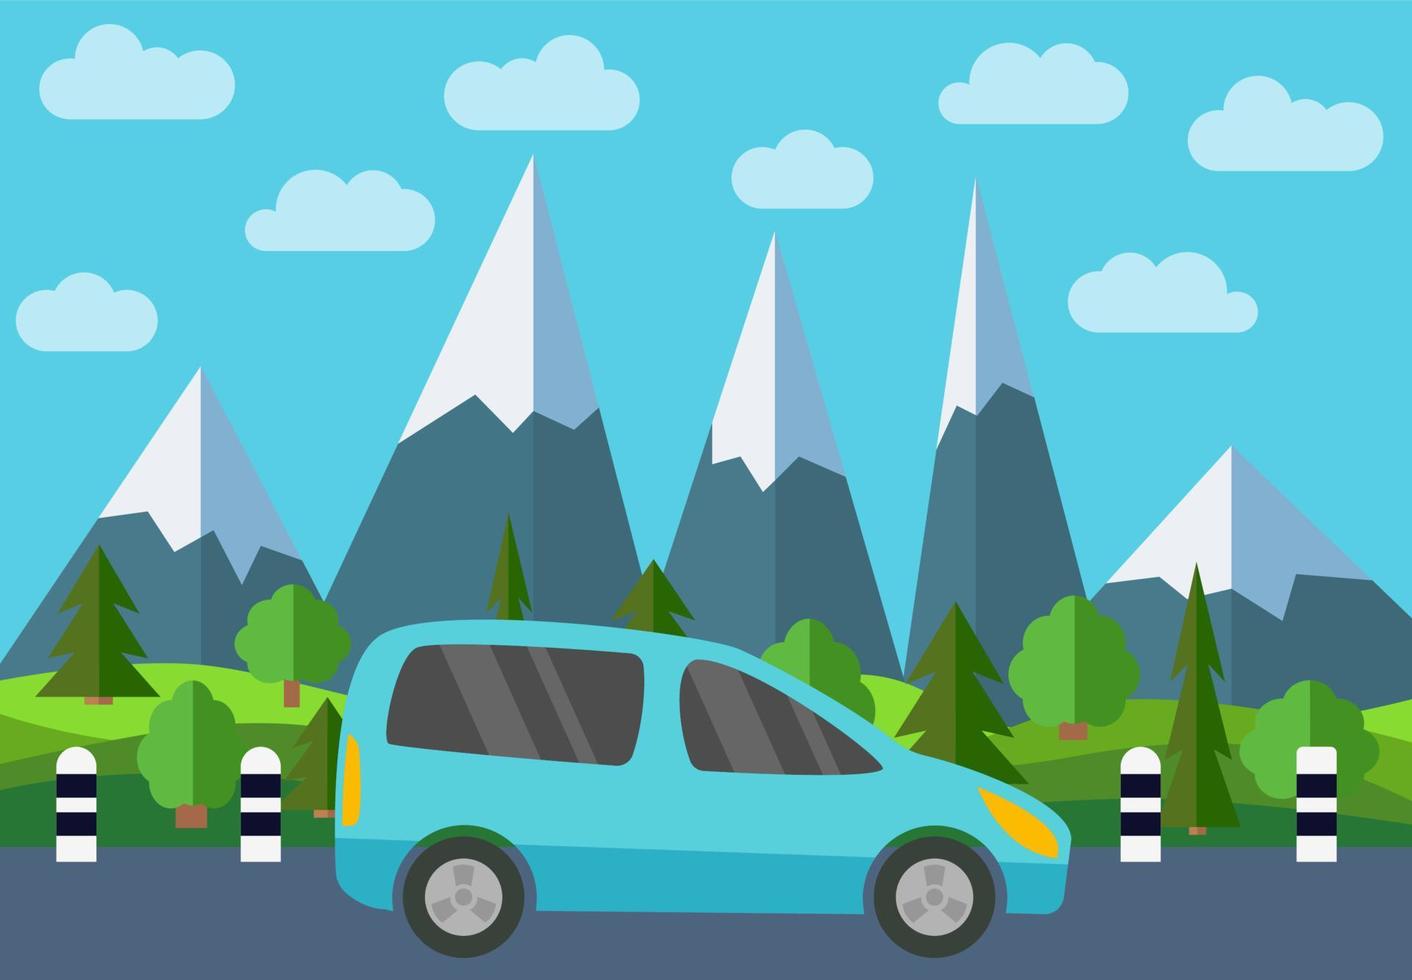 azul coche en el la carretera en contra el fondo de el bosque y montañas. vector ilustración.